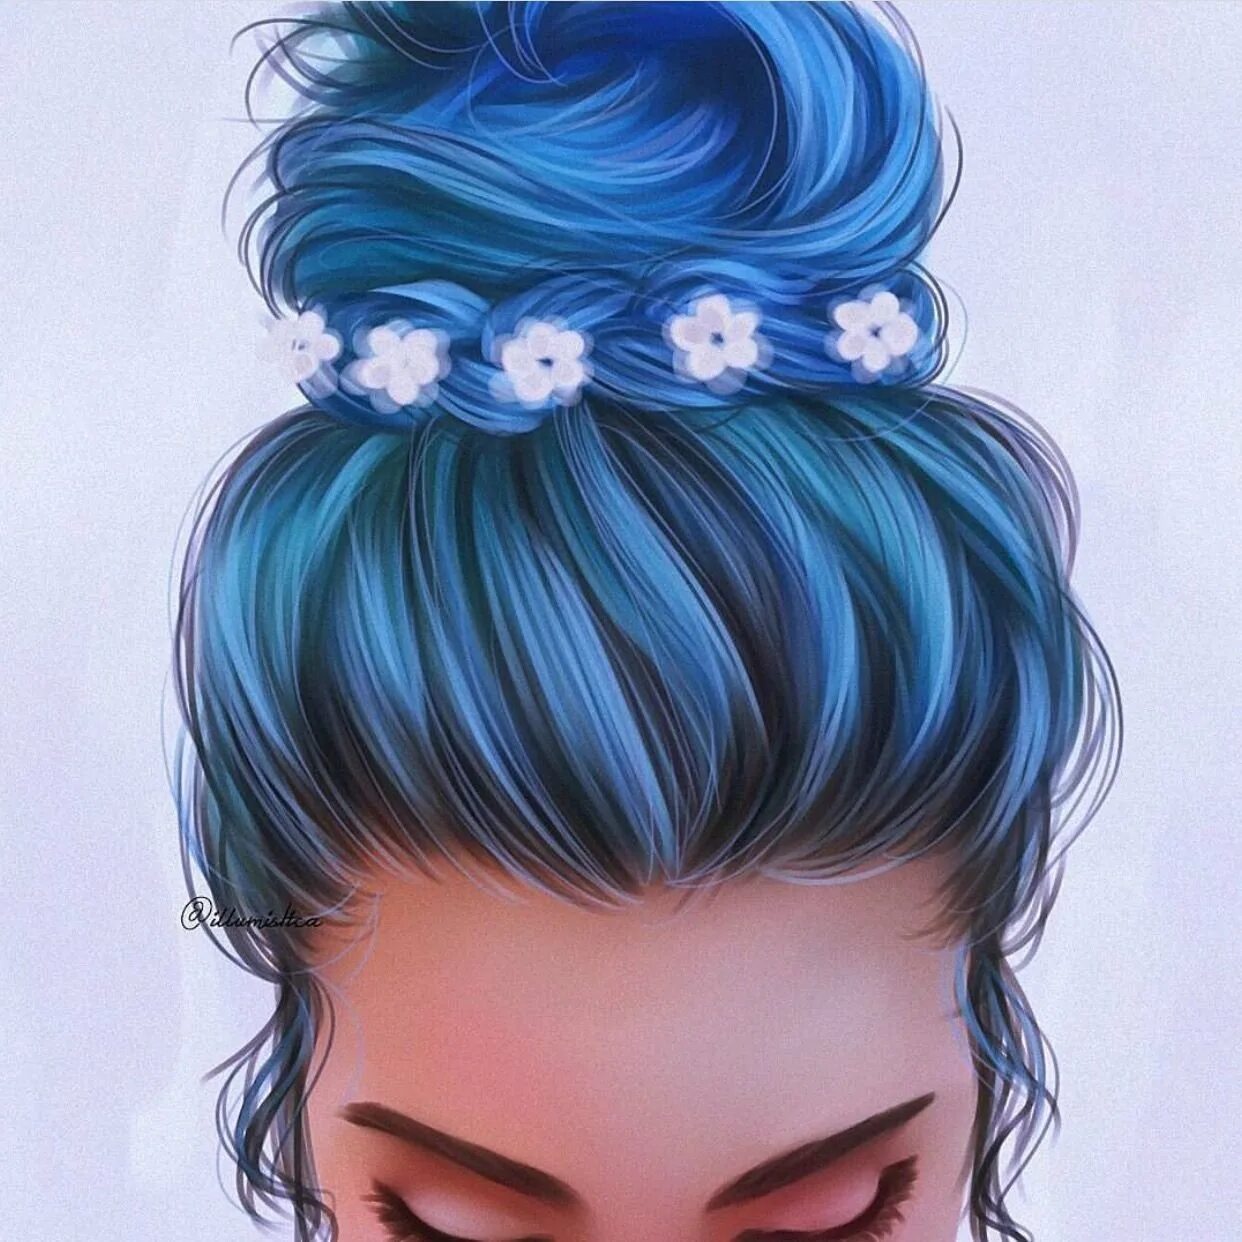 Аватарки цветные. Волосы арты. Нарисованная девушка с пучком. Рисунки девушек в стиле арт. Девушка с синими волосами.